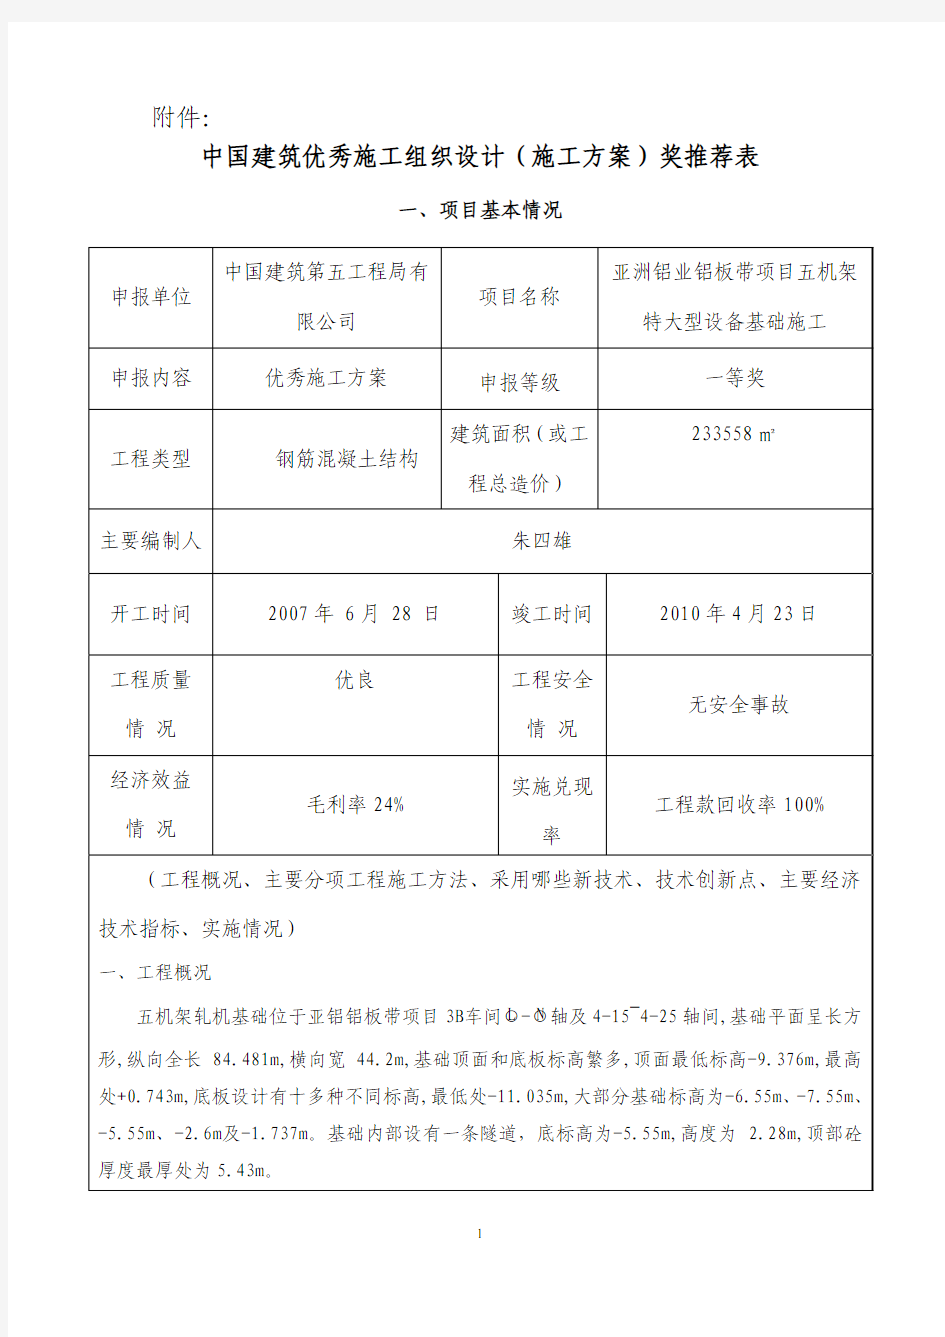 中国建筑优秀施工组织设计(施工方案)奖推荐表